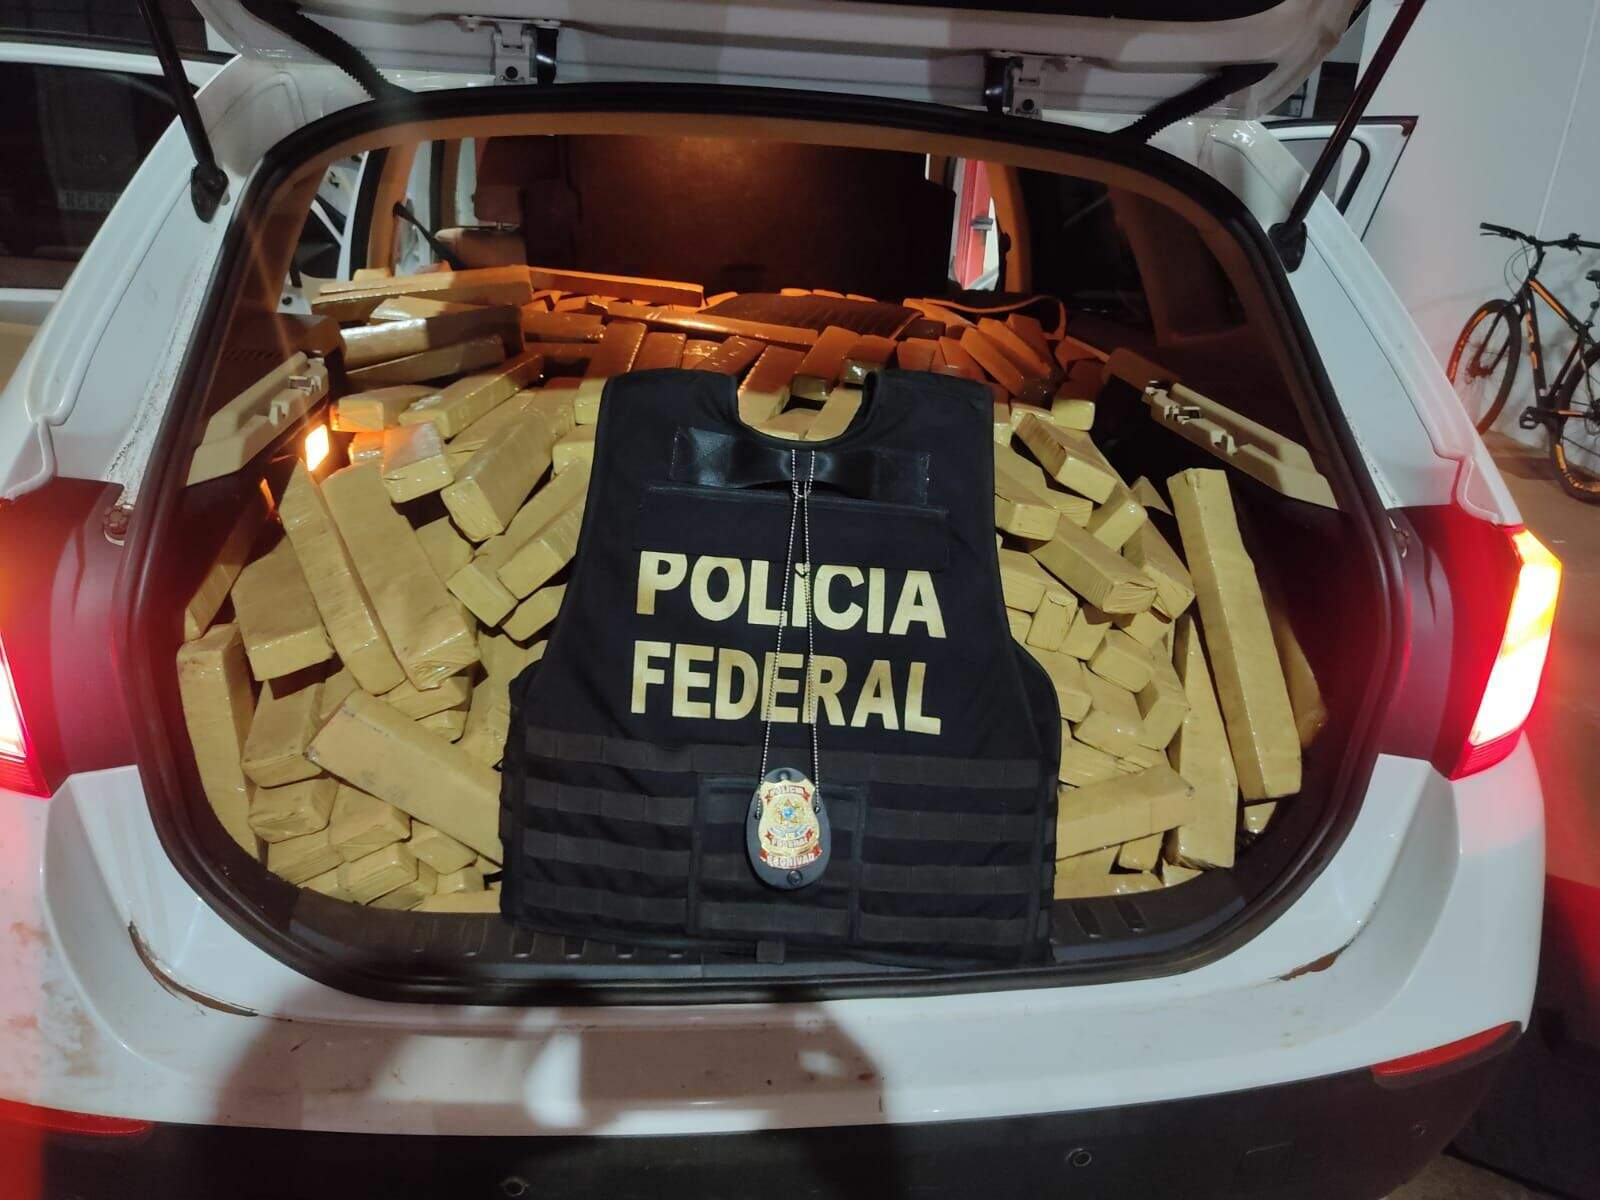 Policiais apreendem 800 kg de maconha dentro de BMW